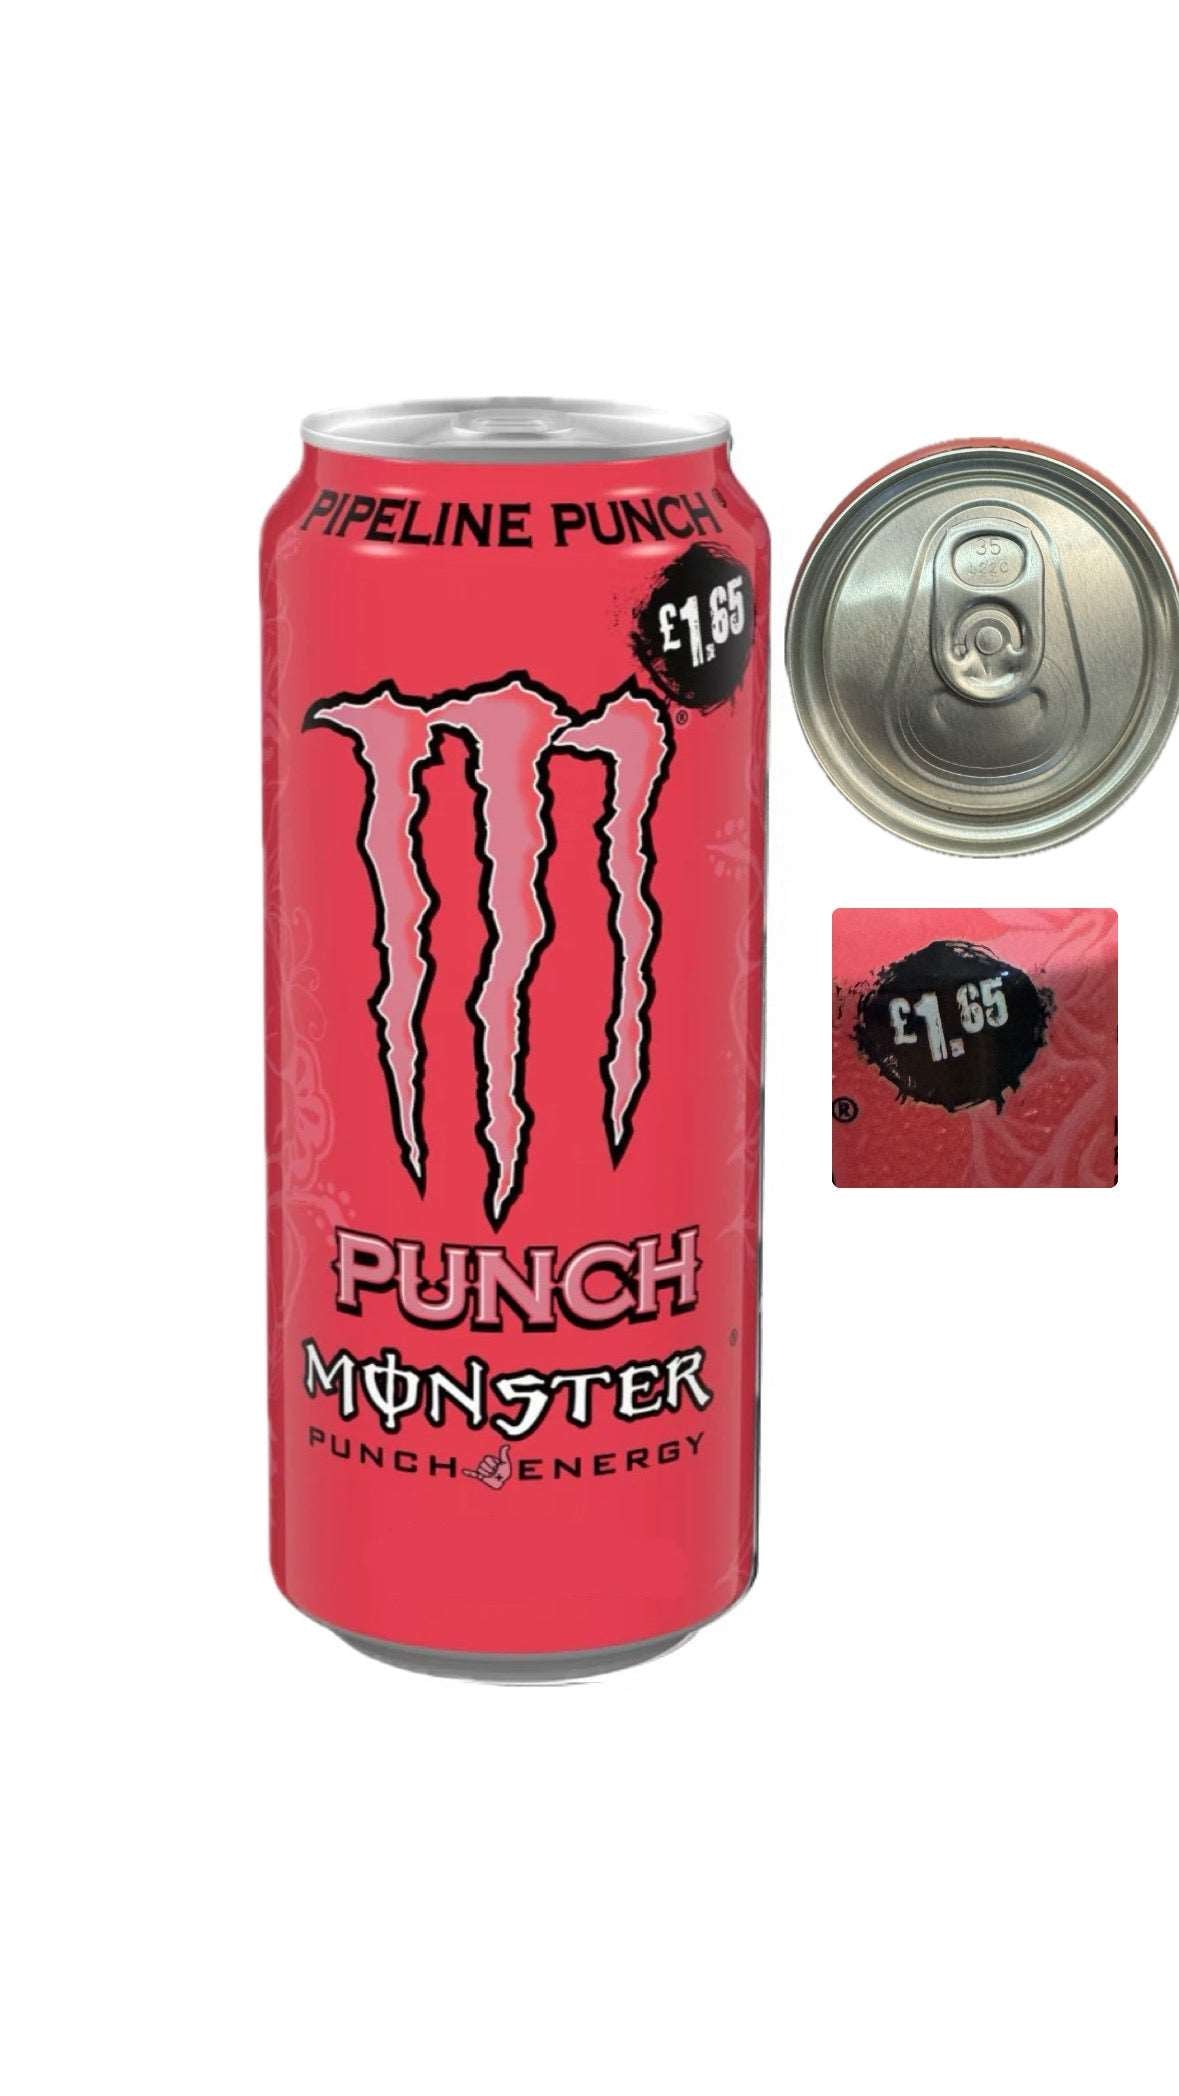 Monster Energy Punch Pipeline UK price market £ 1.65 sku: 1122